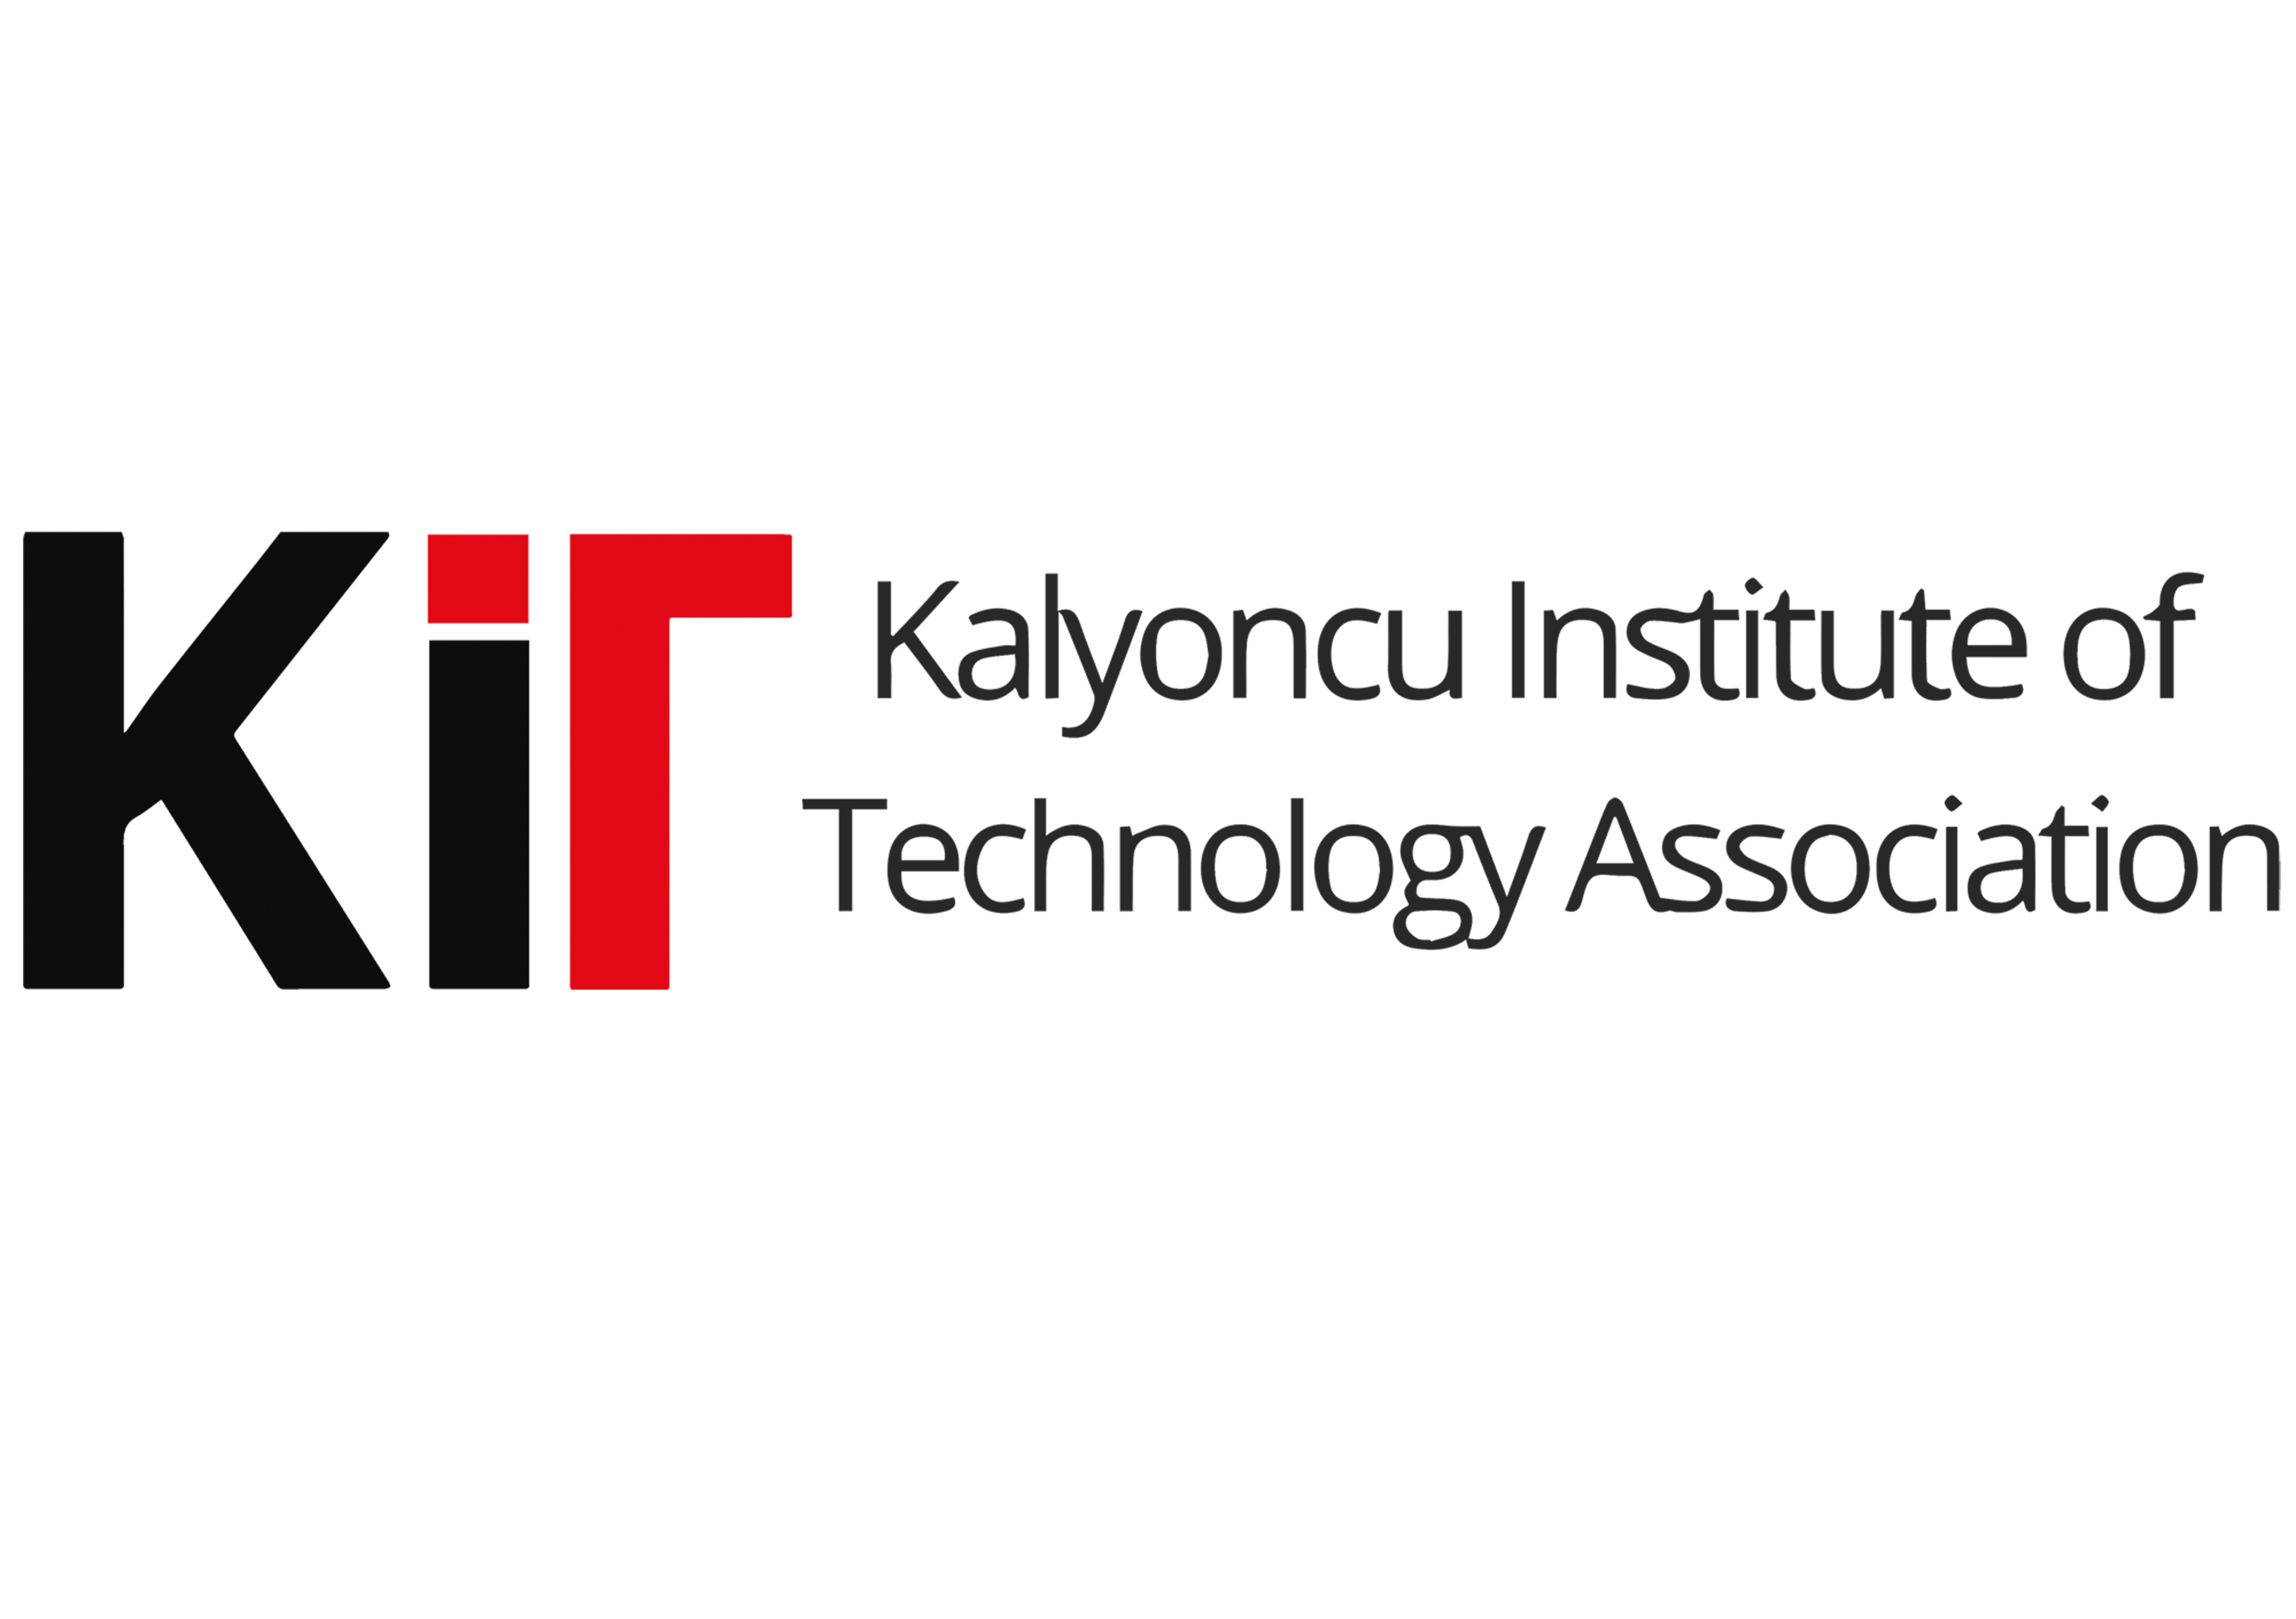 KIT – Kalyoncu Institute Of Technology